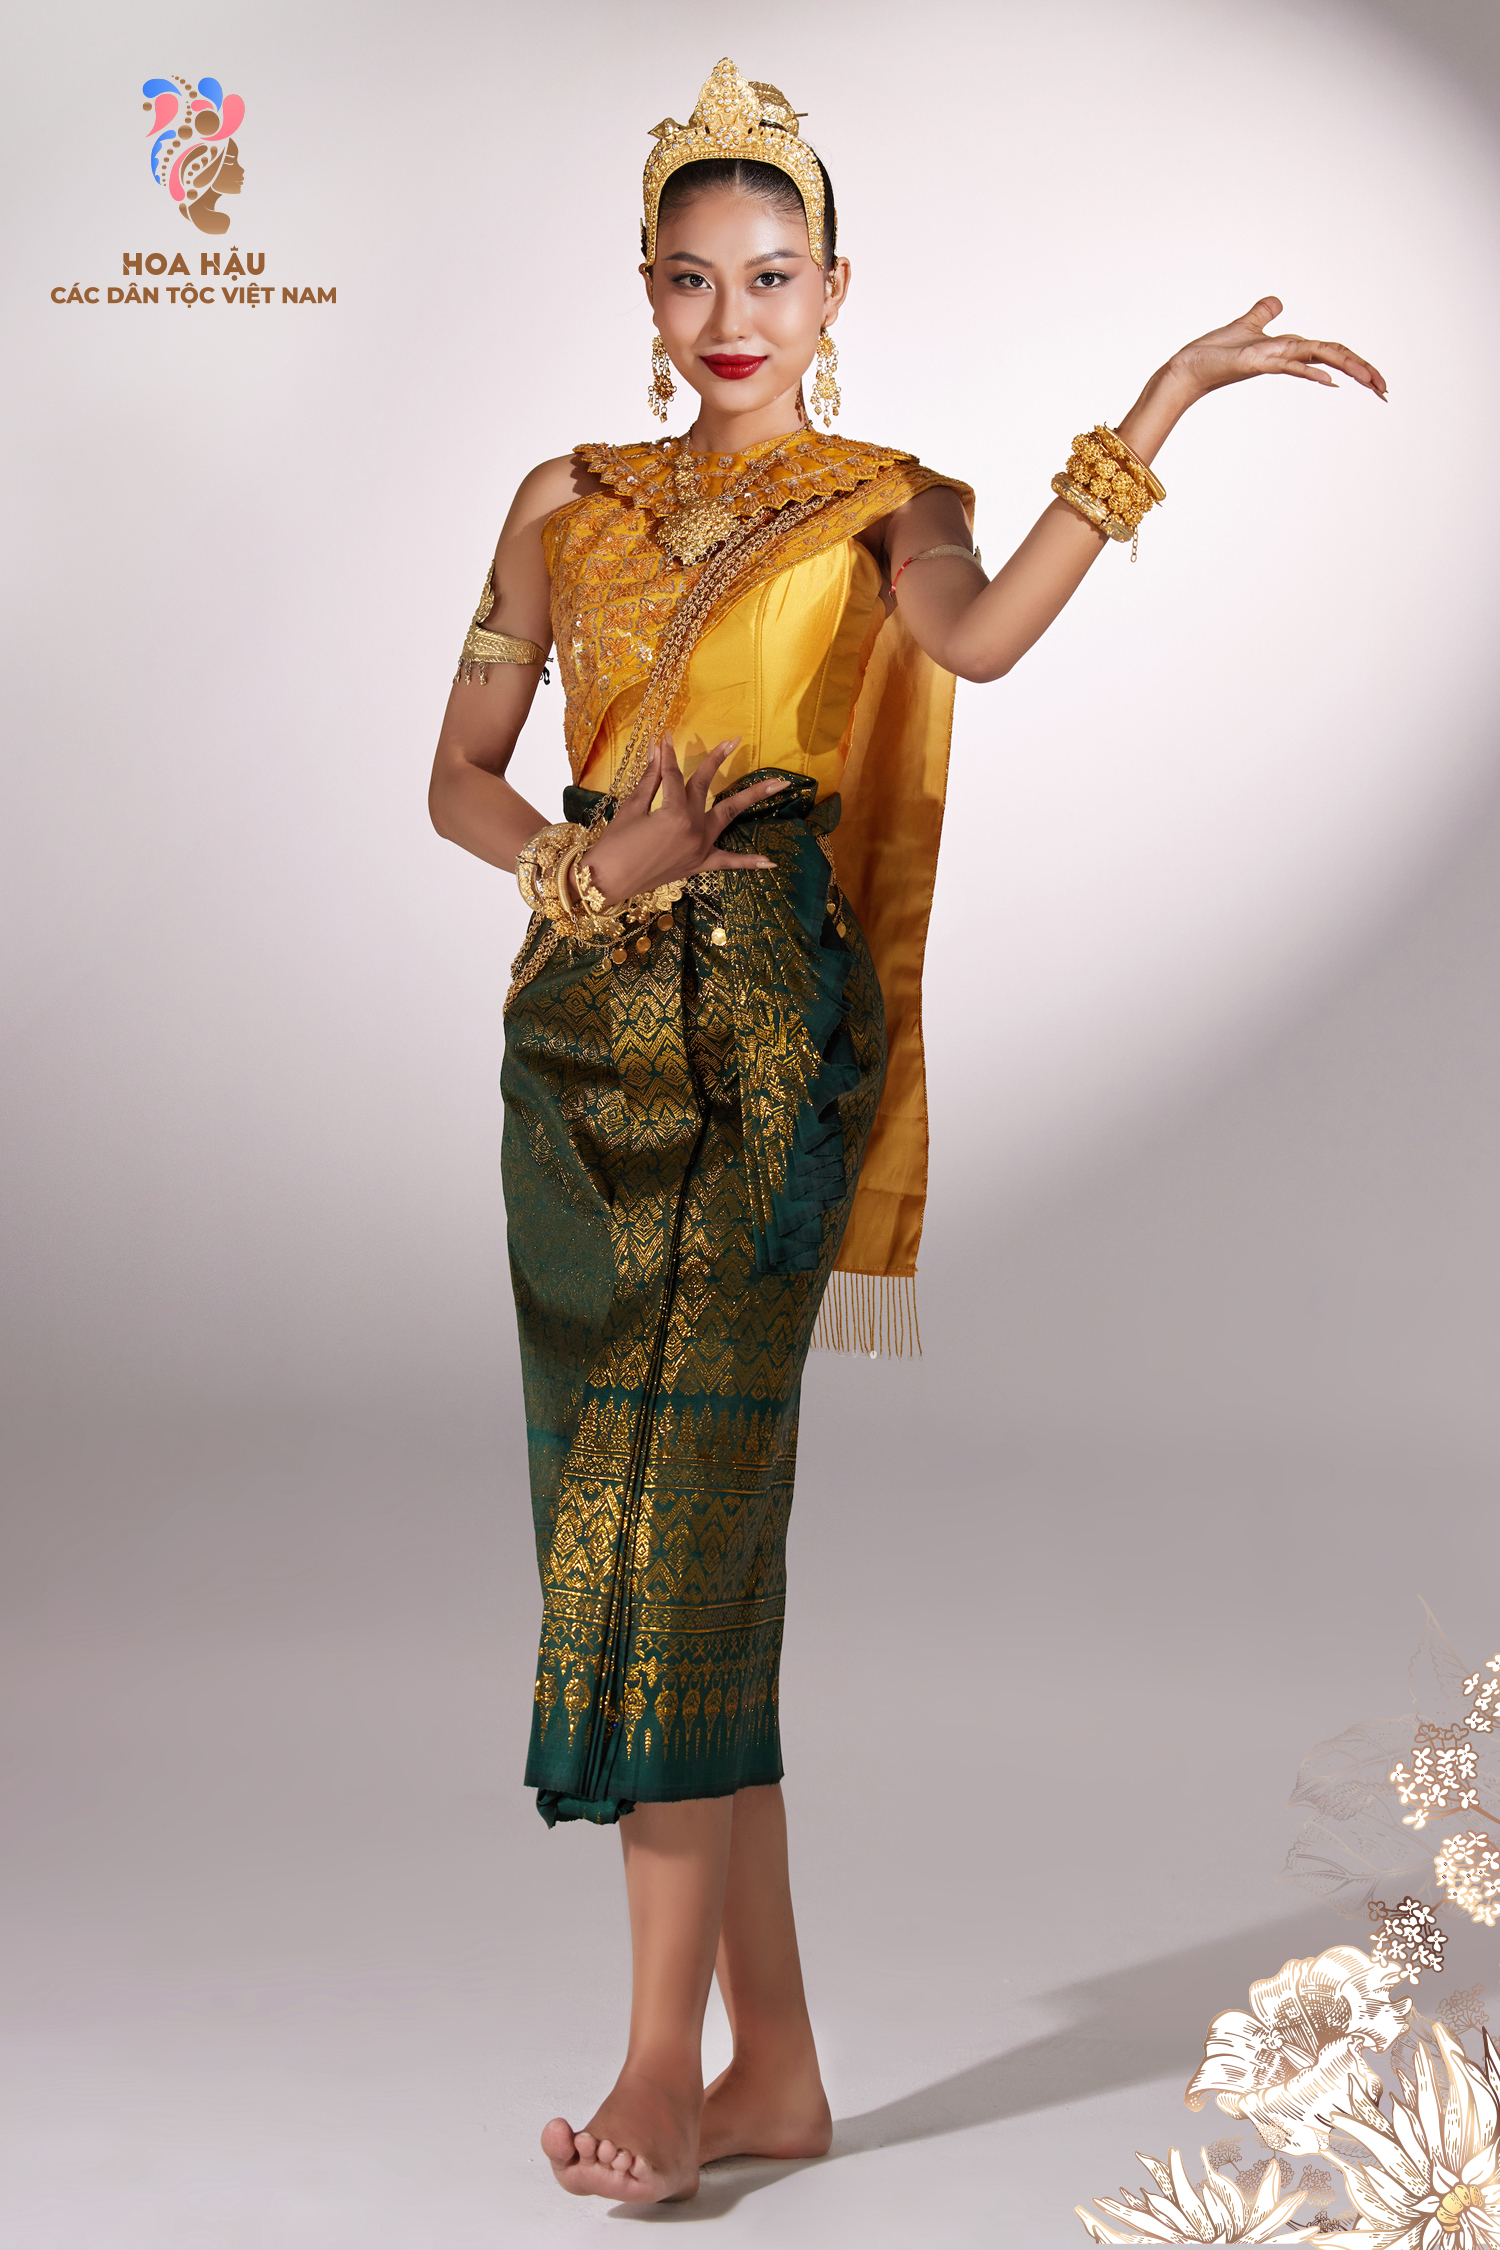 Thạch Thu Thảo khoác lên mình bộ cánh khá cầu kỳ của người dân tộc Khmer. Sựu kết hợp hài hoà giữa áo cổ vòng, vận sà rông và Sbay cùng với những hạt cườm, hạt kim sa lấp lánh được đính trên nền hoa văn tinh xảo.